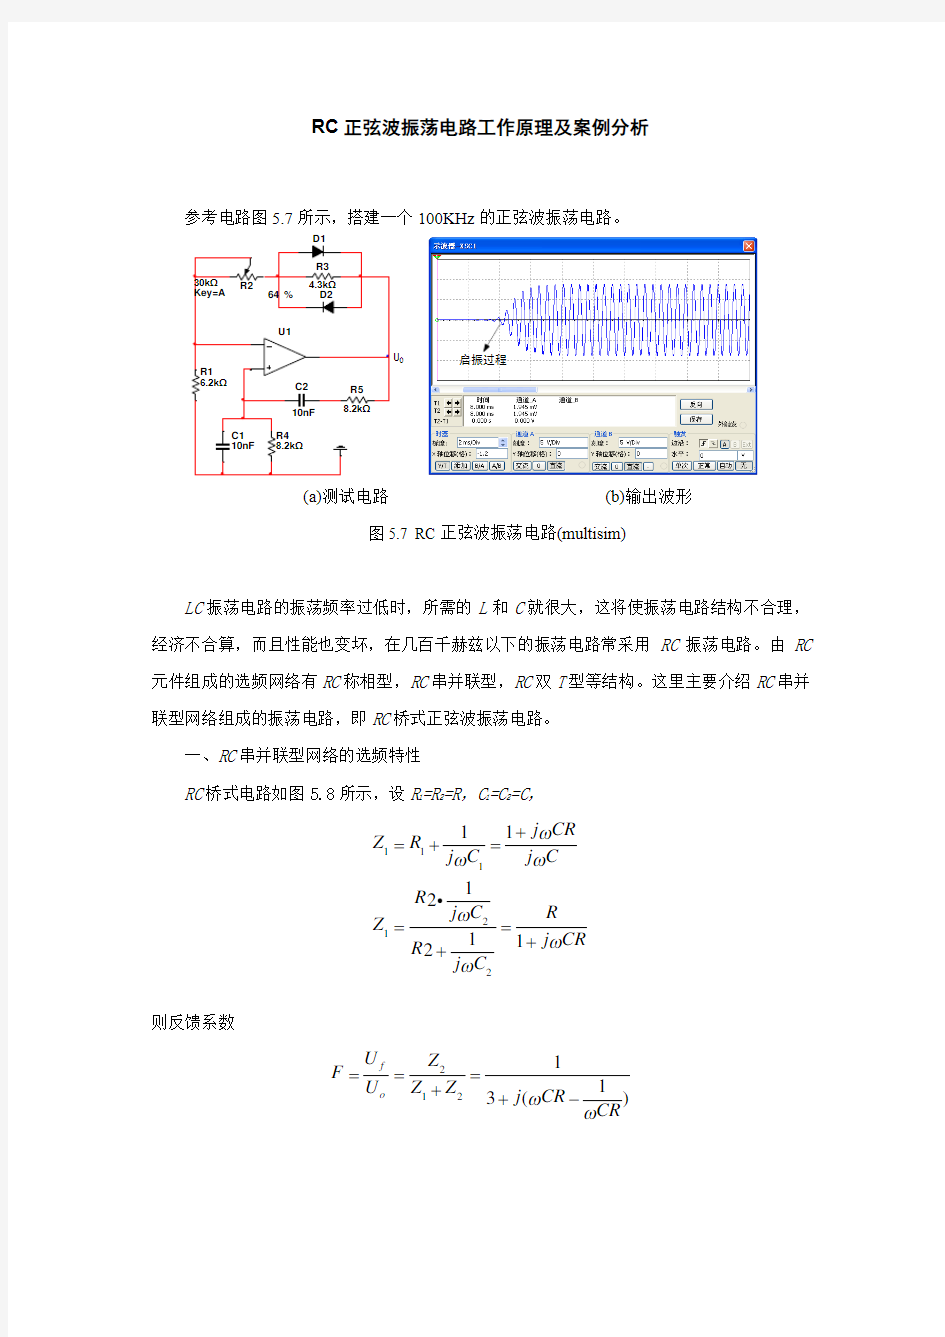 RC正弦波振荡电路工作原理及案例分析